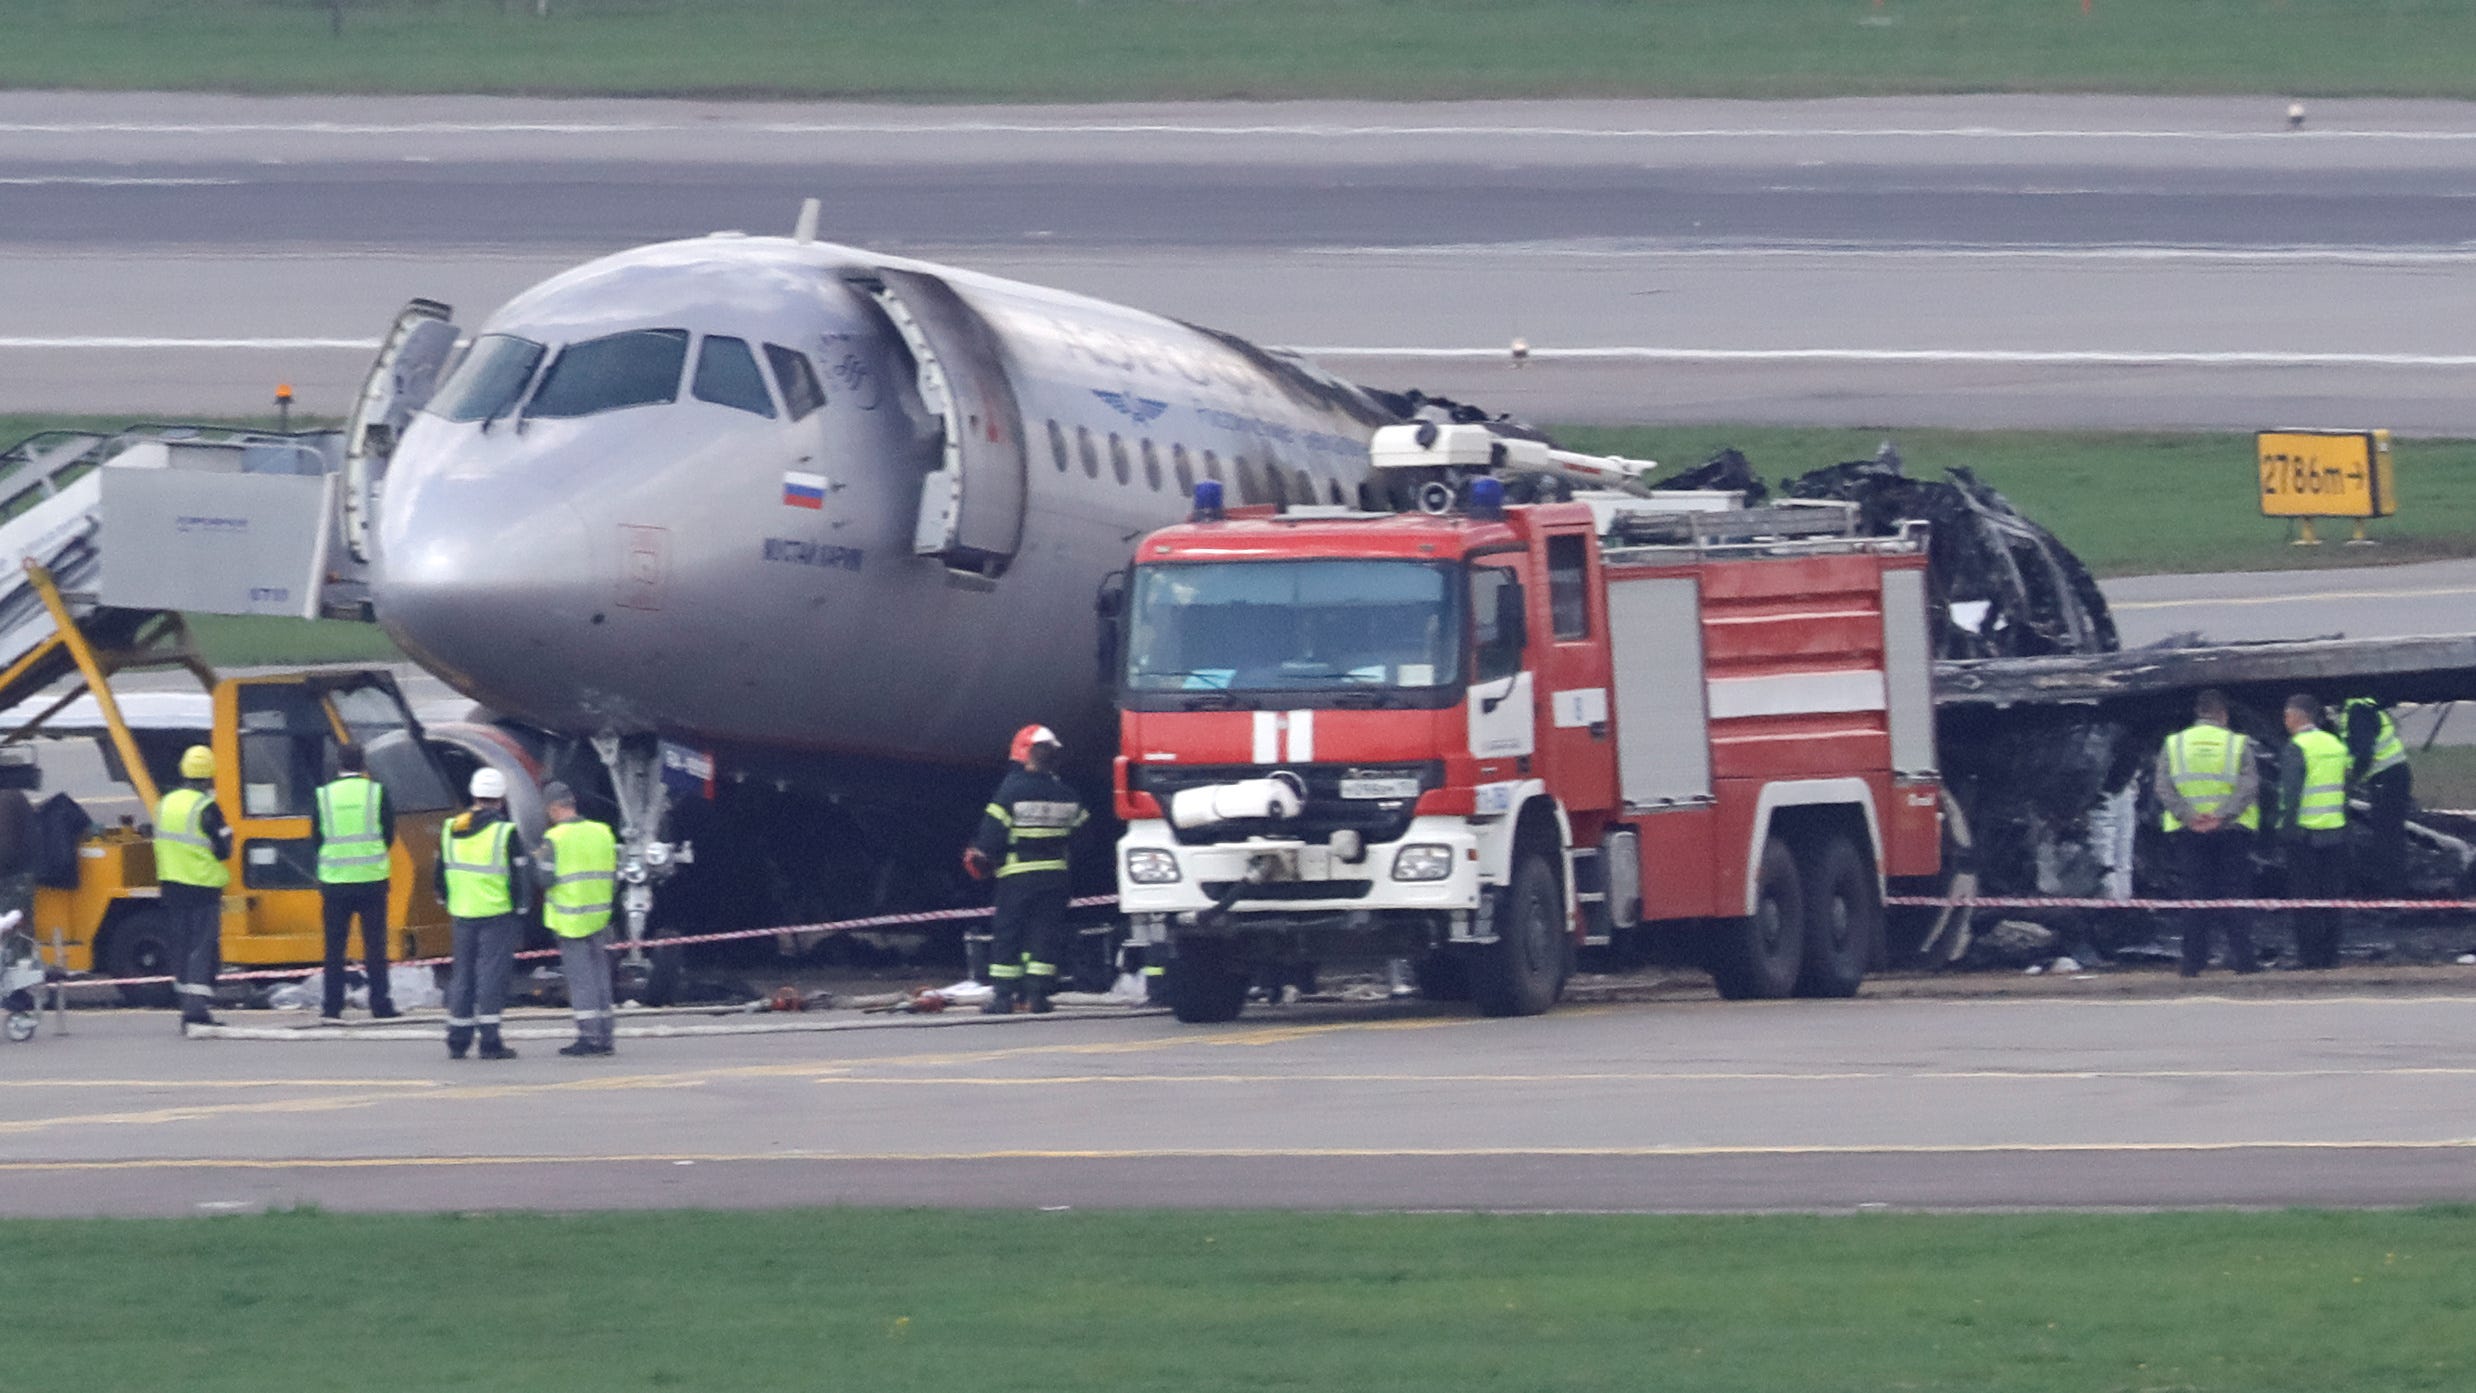 DATEIFOTO – Mitglieder von Rettungsdiensten und Ermittler arbeiten am Unfallort eines Vorfalls mit einem Passagierflugzeug vom Typ Aeroflot Sukhoi Superjet 100 am Moskauer Flughafen Scheremetjewo, Russland, 6. Mai 2019. REUTERS/Tatyana Makeyeva